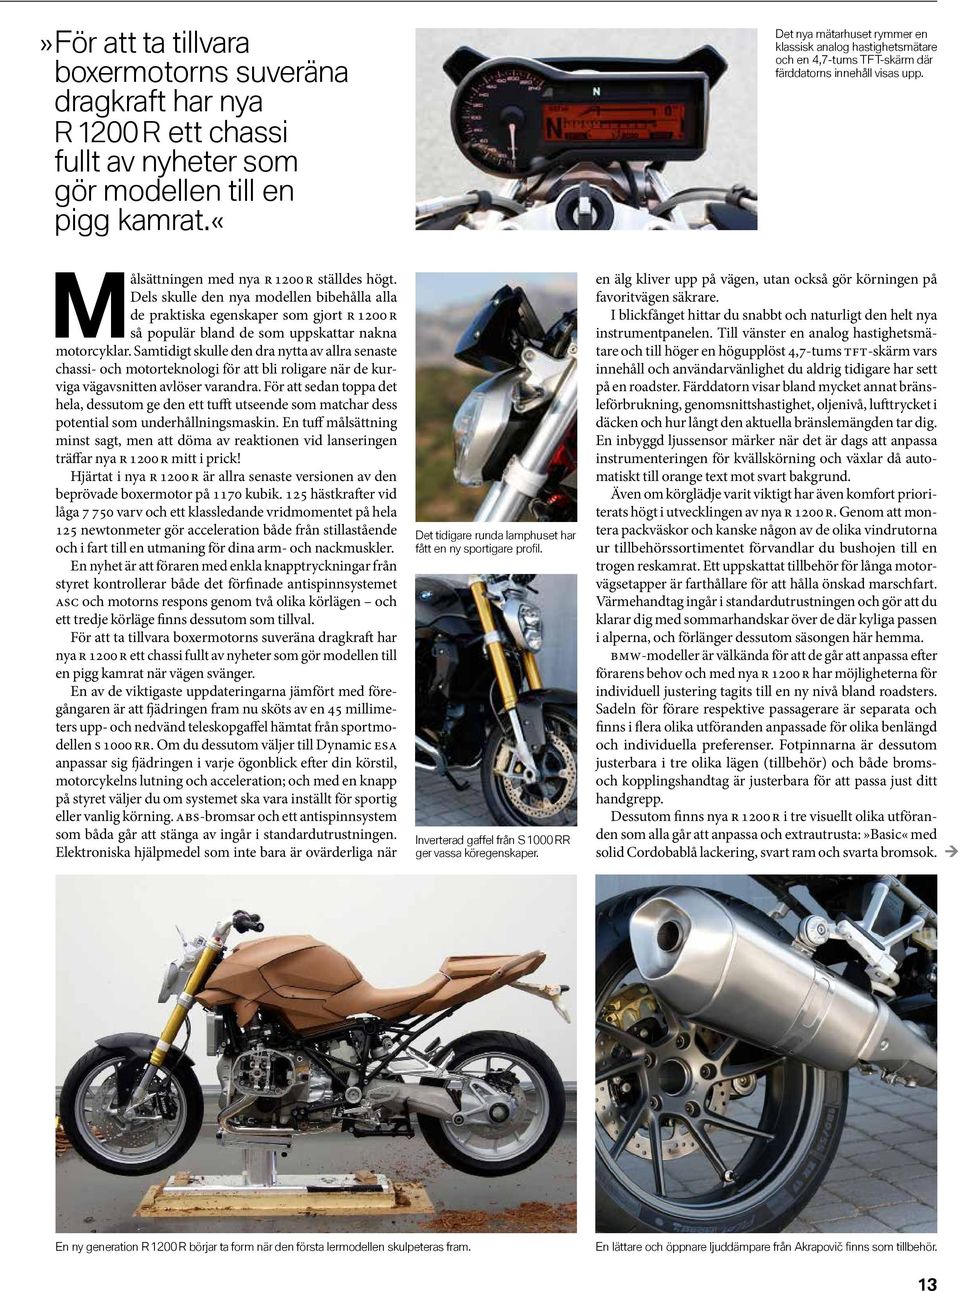 Dels skulle den nya modellen bibehålla alla de praktiska egenskaper som gjort R 1200 R så populär bland de som uppskattar nakna motorcyklar.